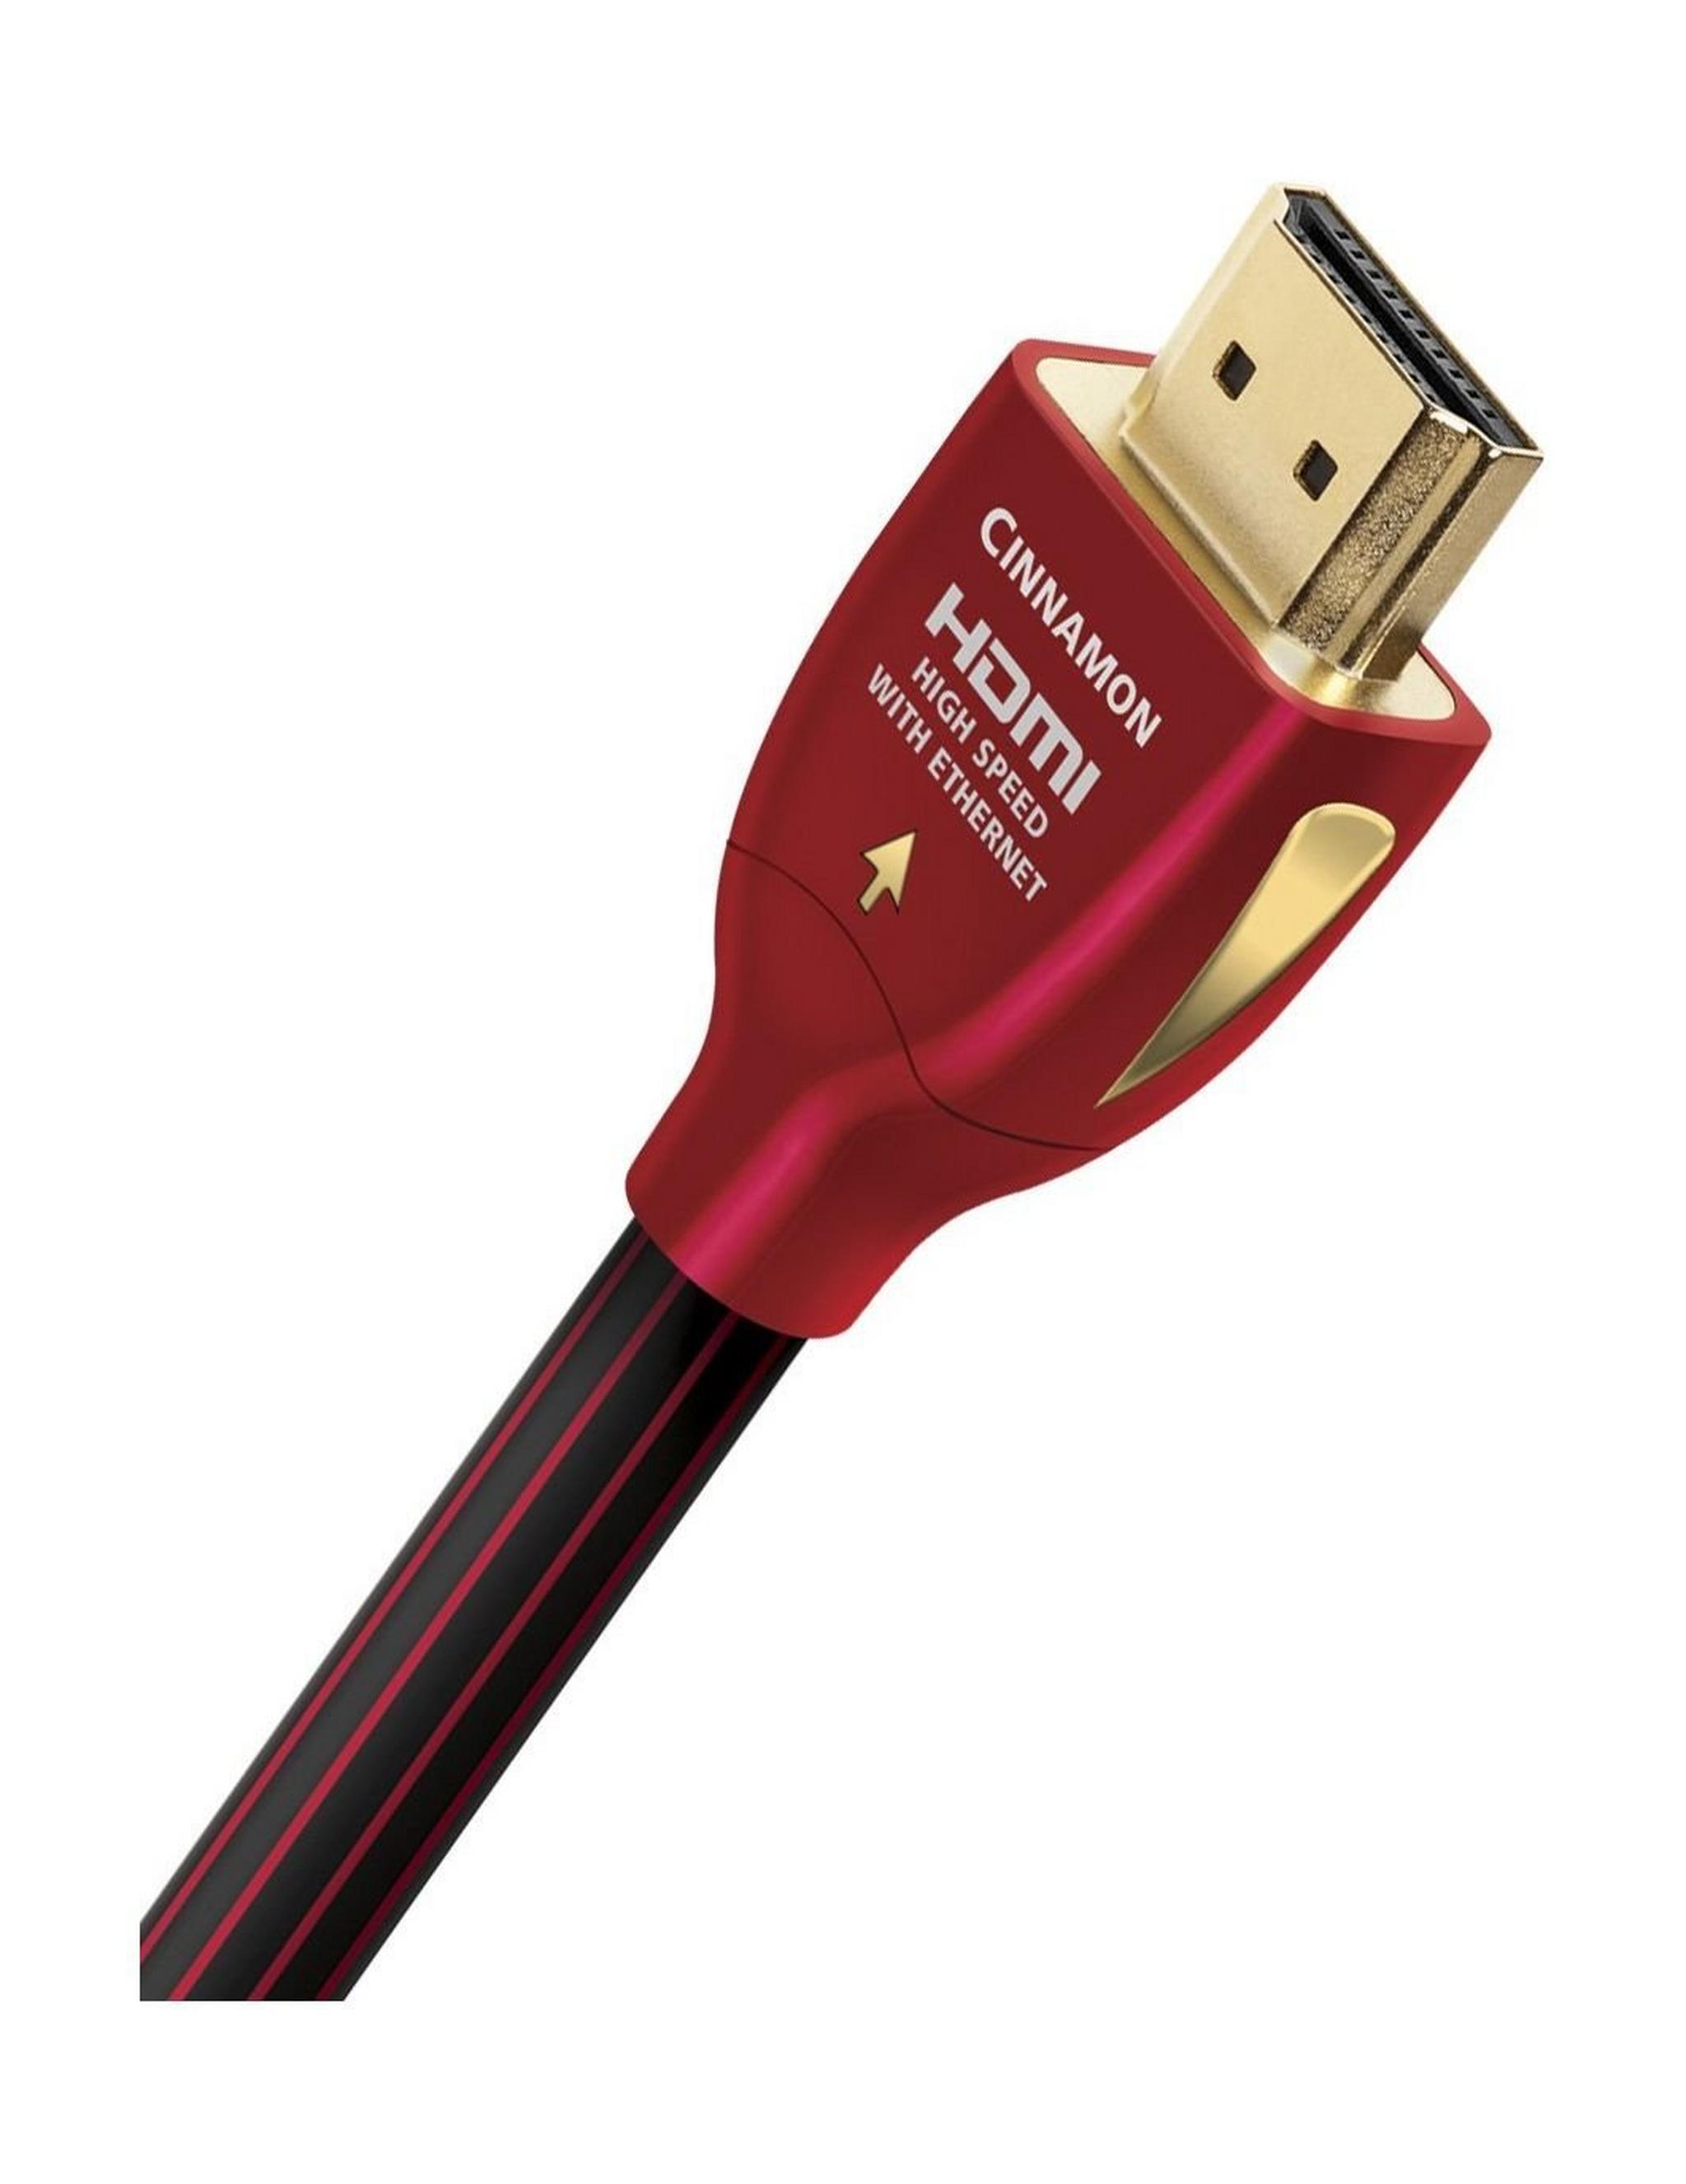 Audioquest Cinnamon HDMI Cable 2m (HDMICIN02) - Red